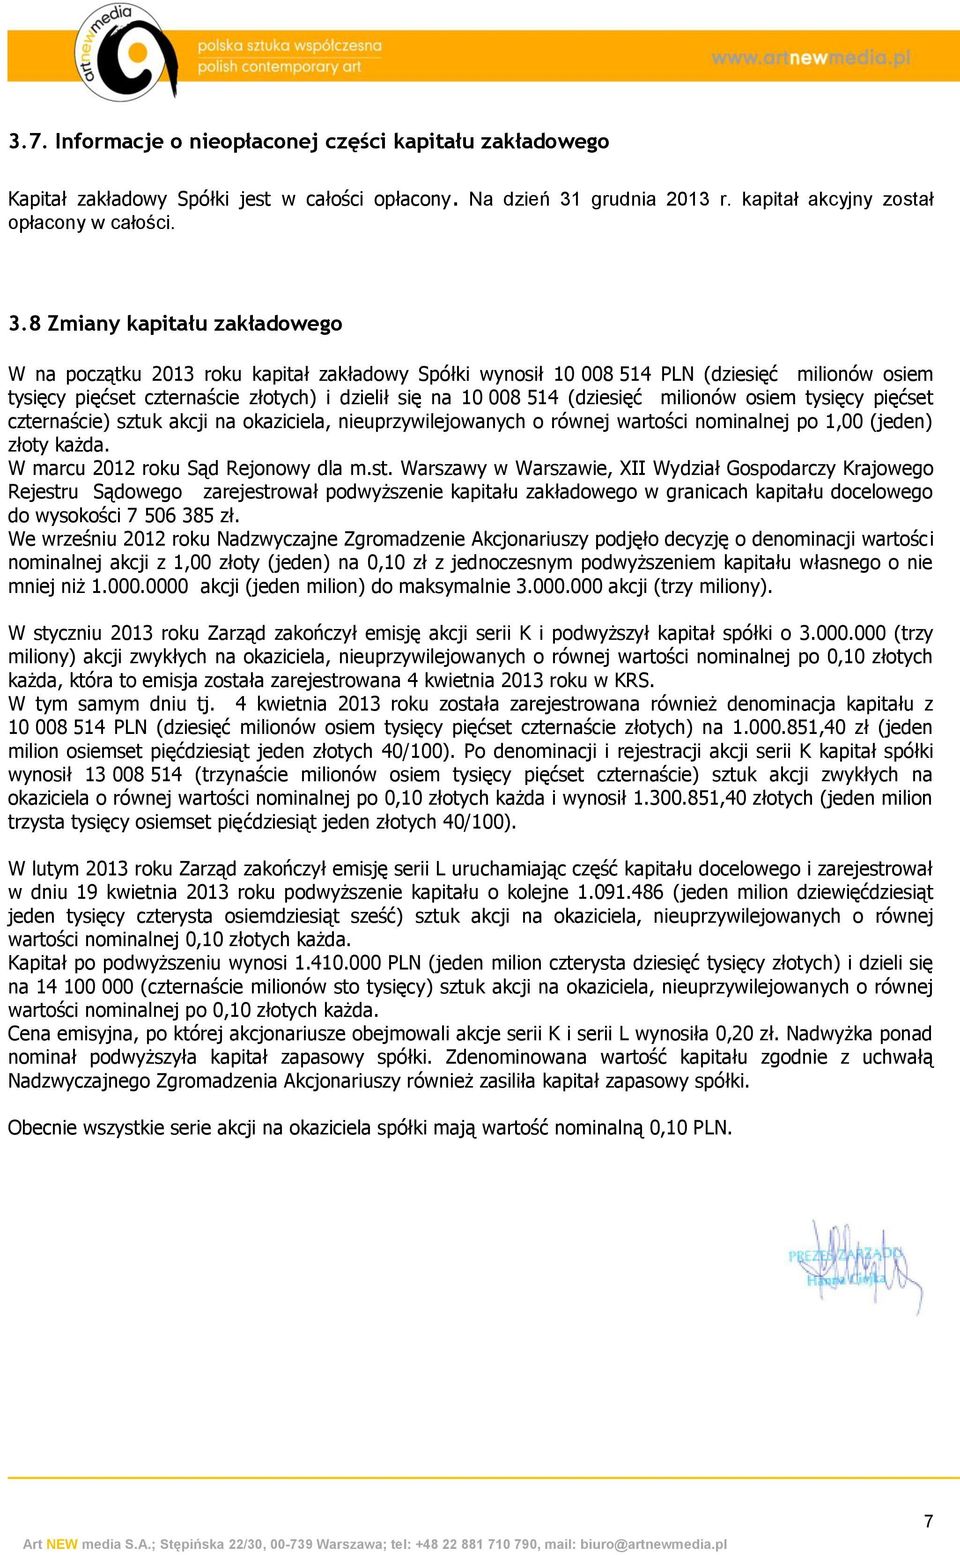 8 Zmiany kapitału zakładowego W na początku 2013 roku kapitał zakładowy Spółki wynosił 10 008 514 PLN (dziesięć milionów osiem tysięcy pięćset czternaście złotych) i dzielił się na 10 008 514